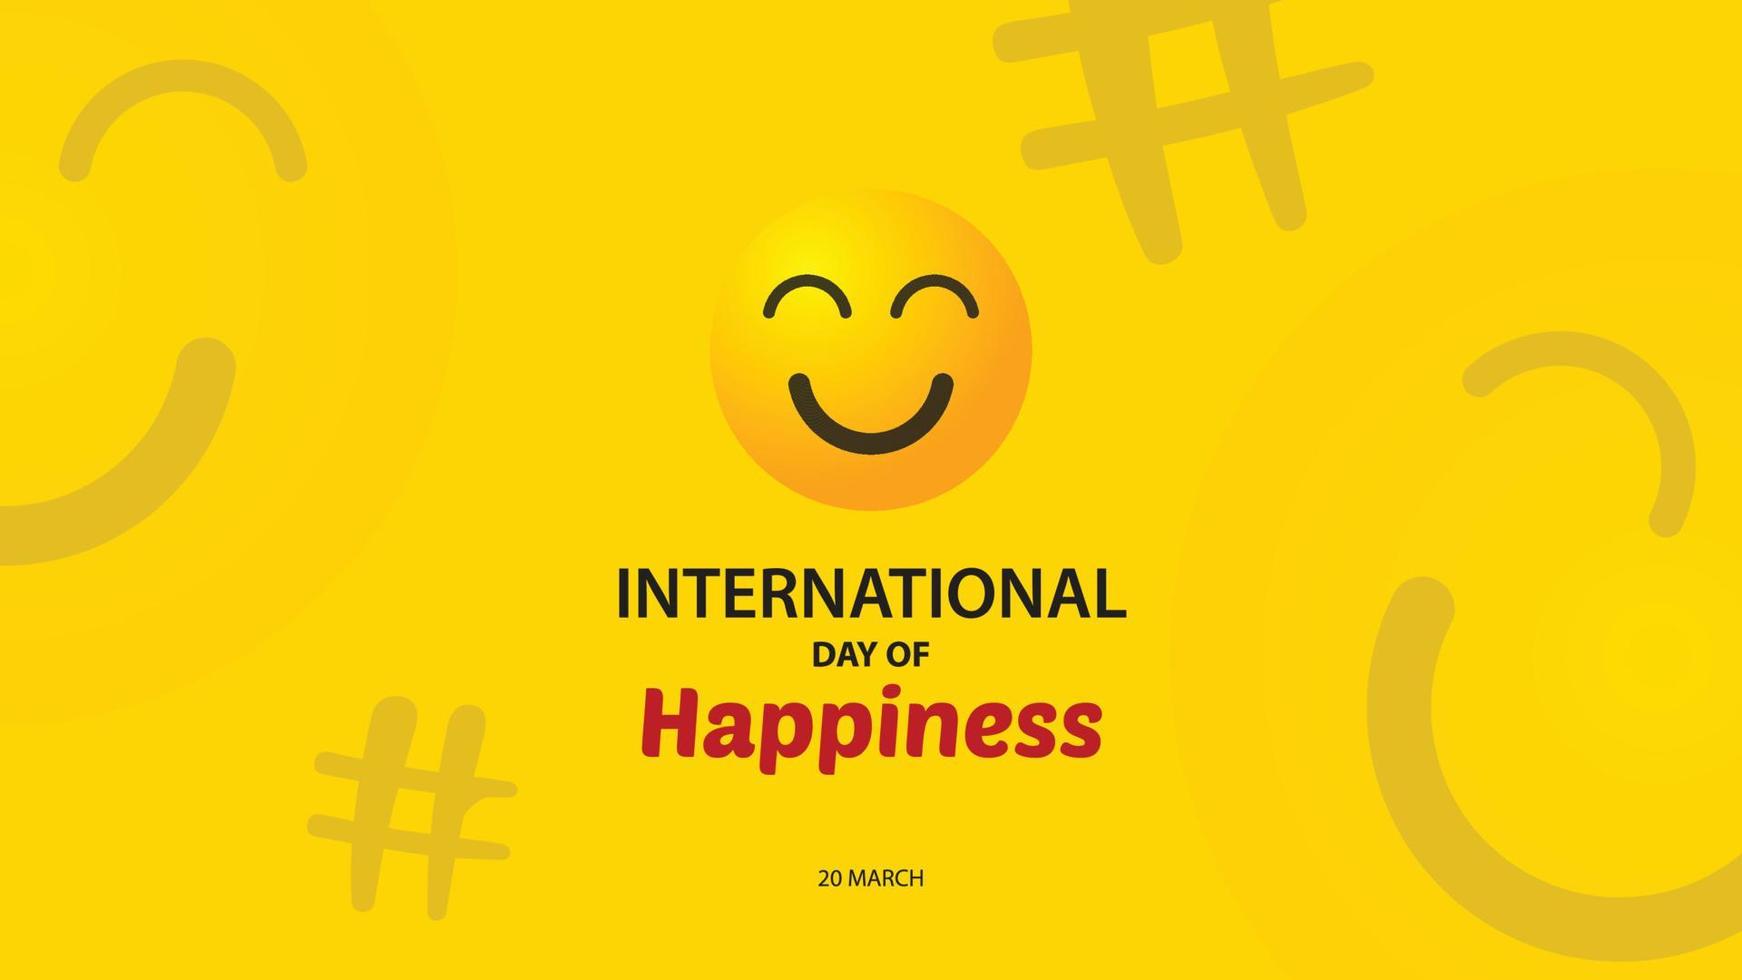 dia Internacional da Felicidade. fundo de ilustração vetorial vetor